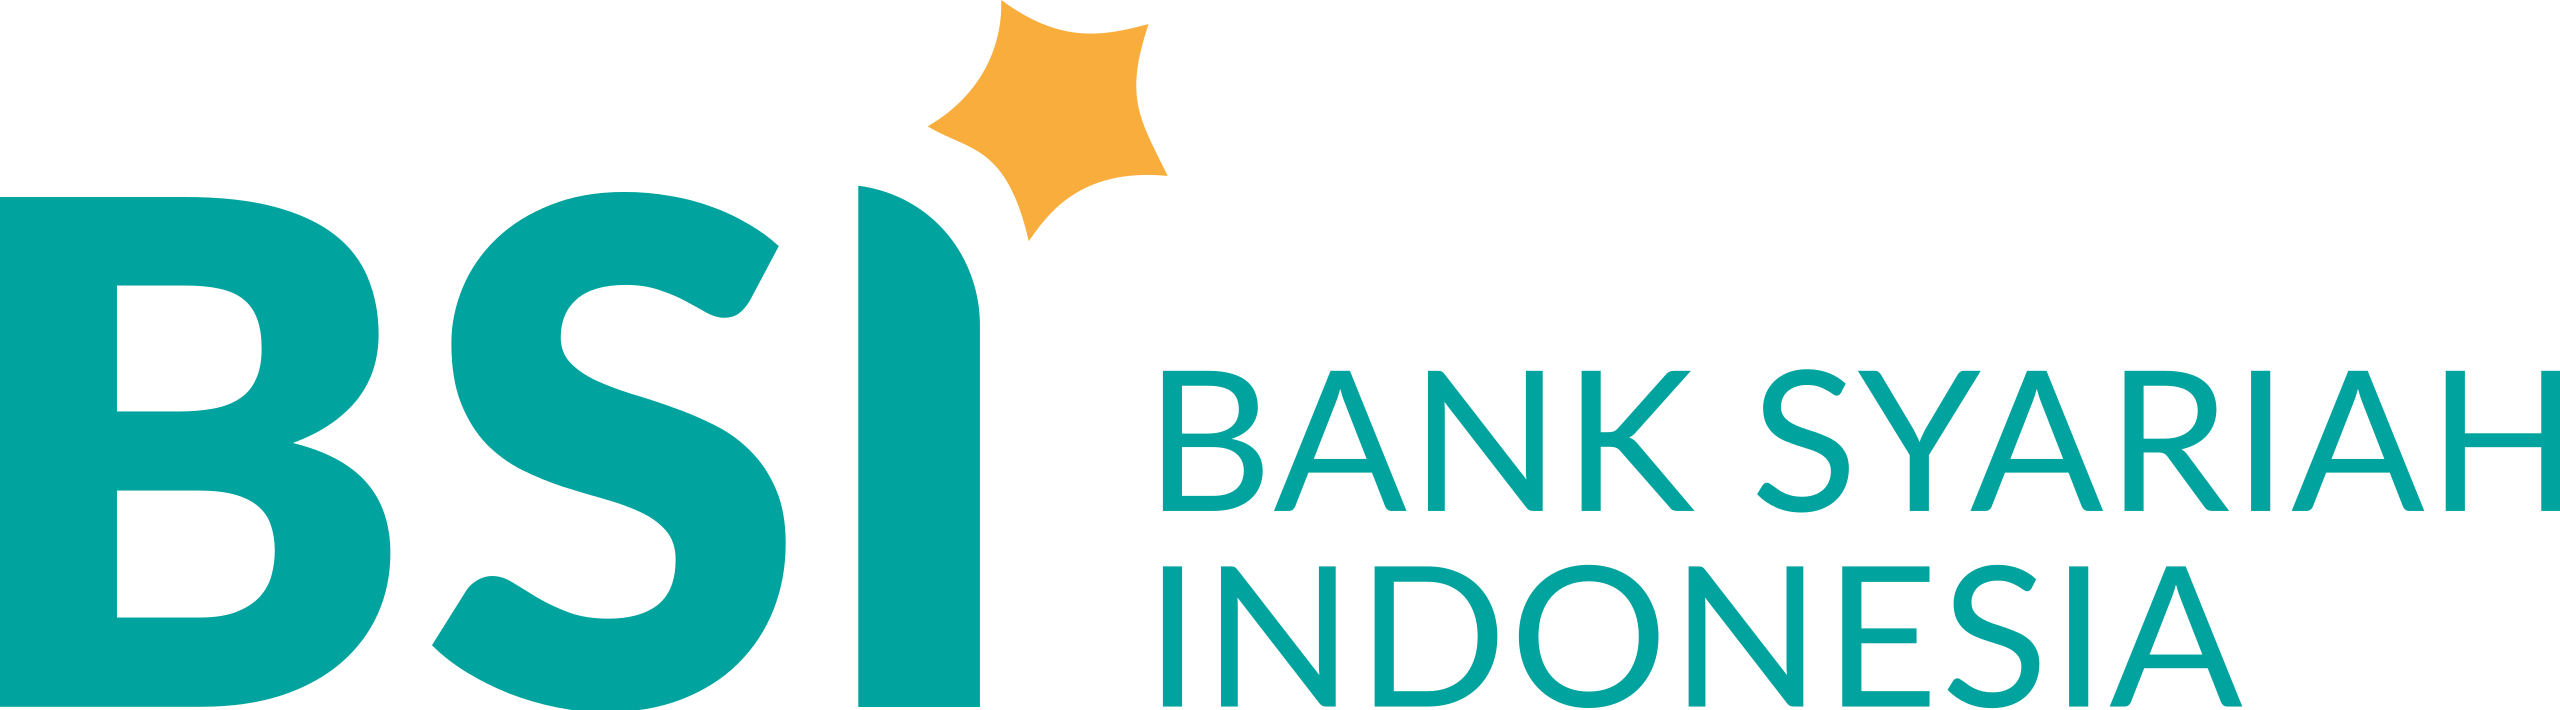 2560px-Bank_Syariah_Indonesia.svg.png